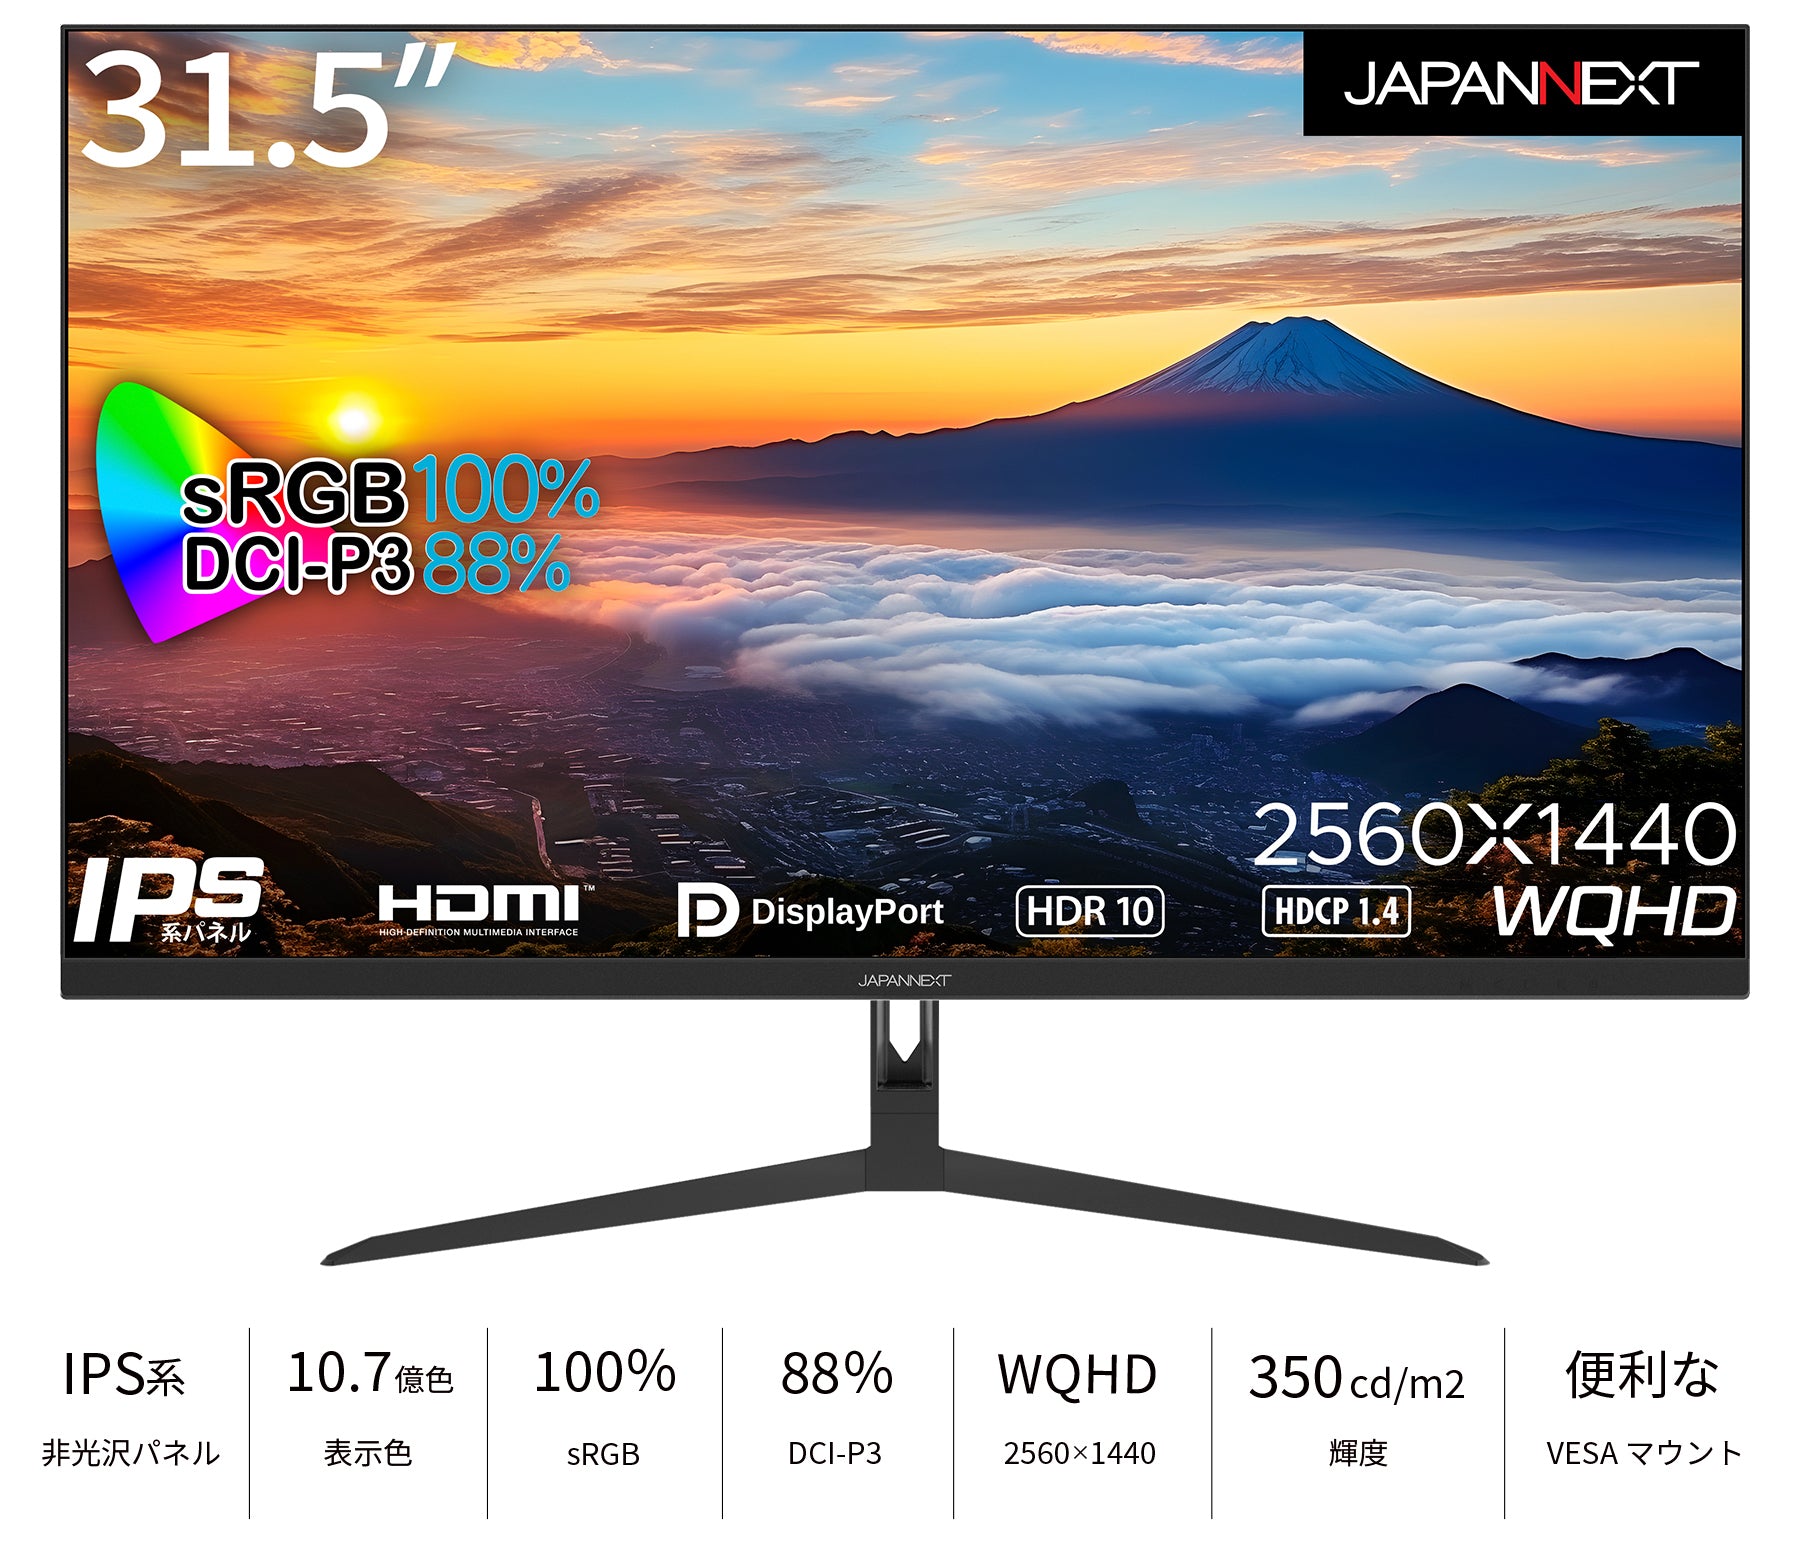 JAPANNEXT IPSパネル 31.5インチ WQHD(2560 x 1440) 液晶モニター JN 